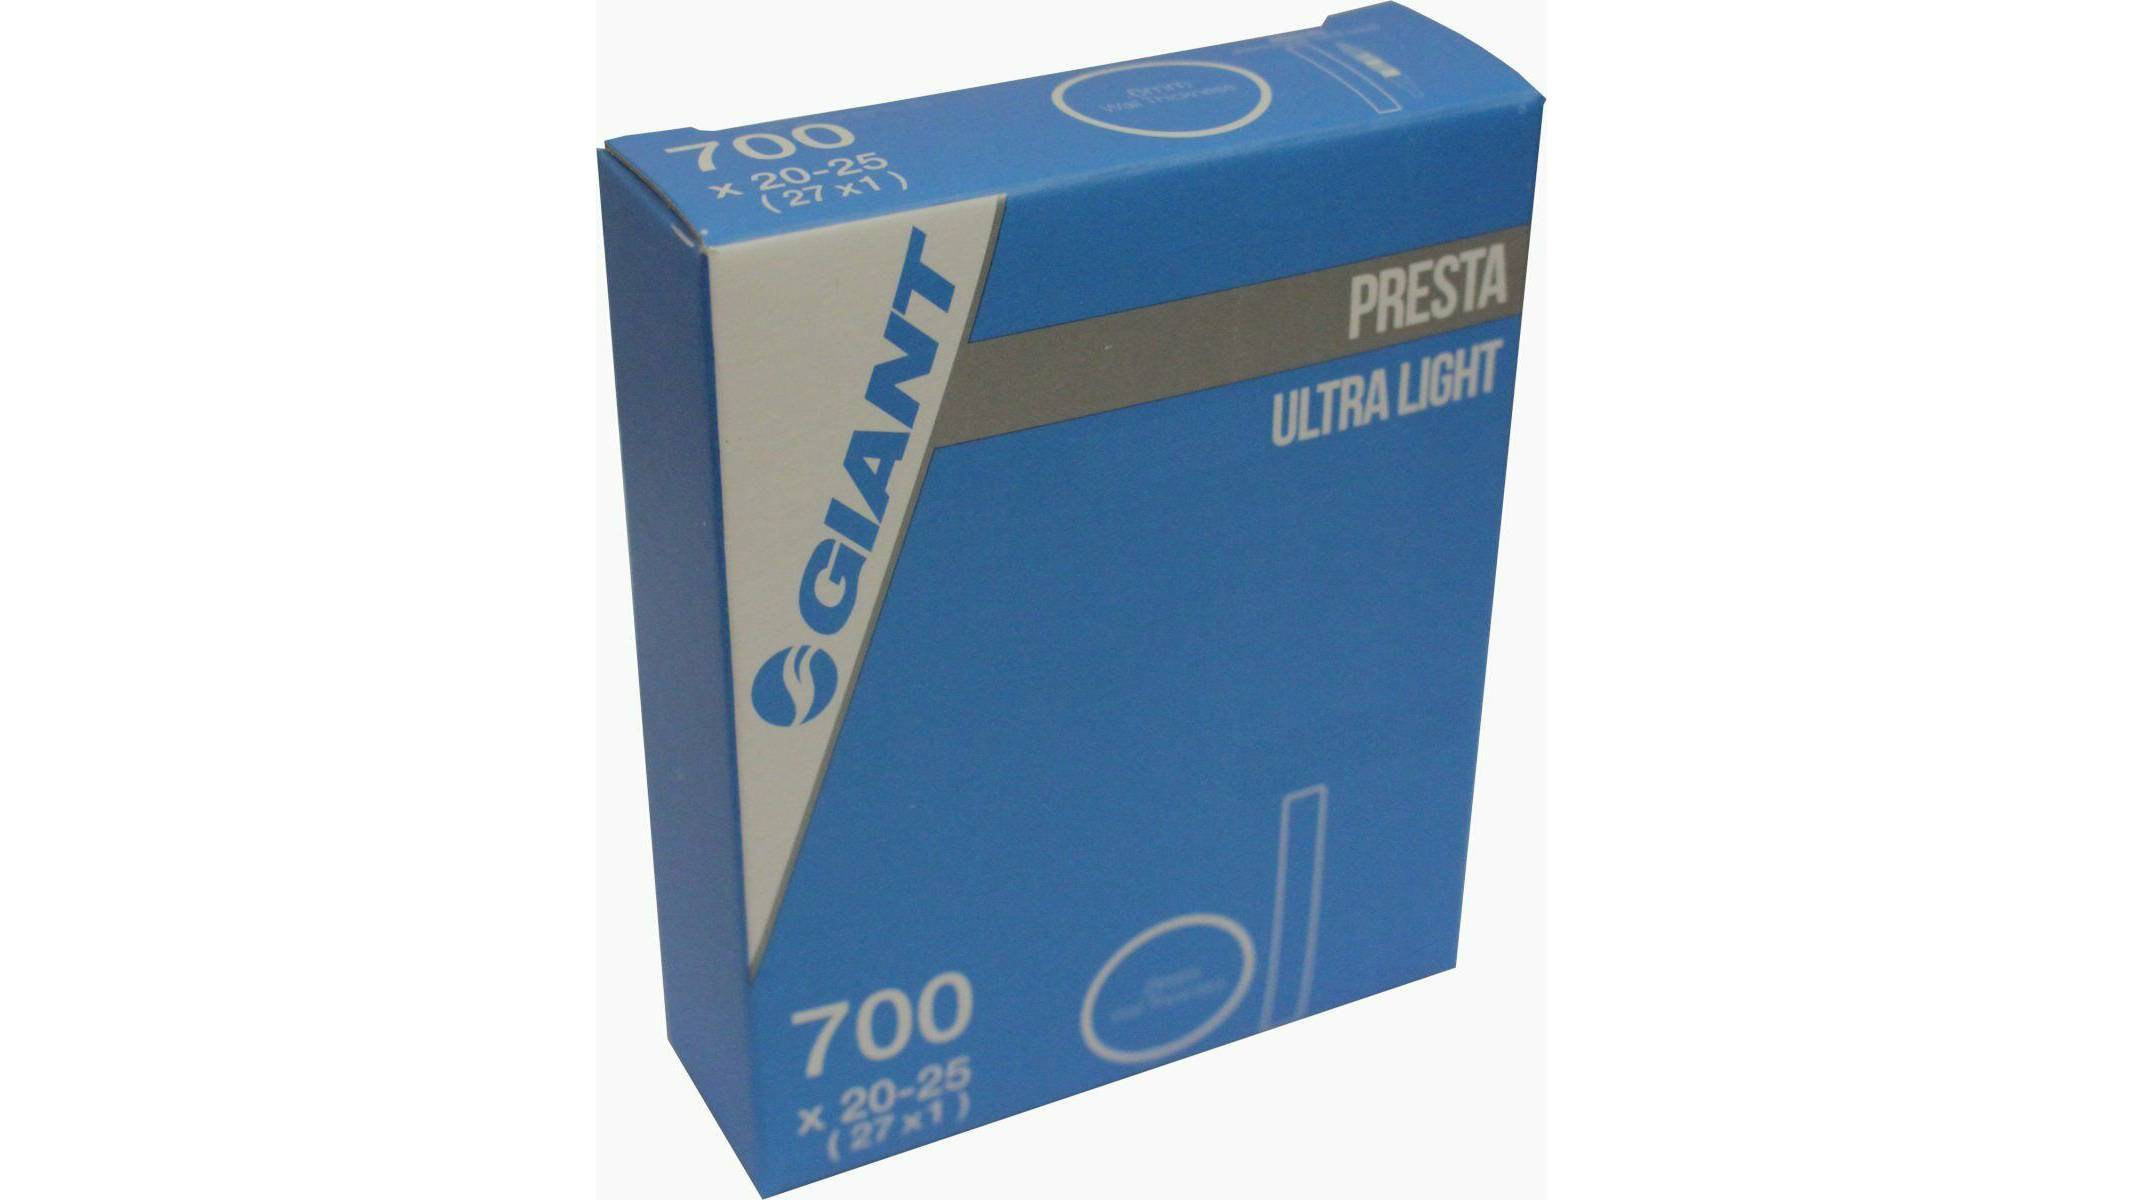 Камера Giant Ultra Light 700x20-25 FV (Presta) 80мм